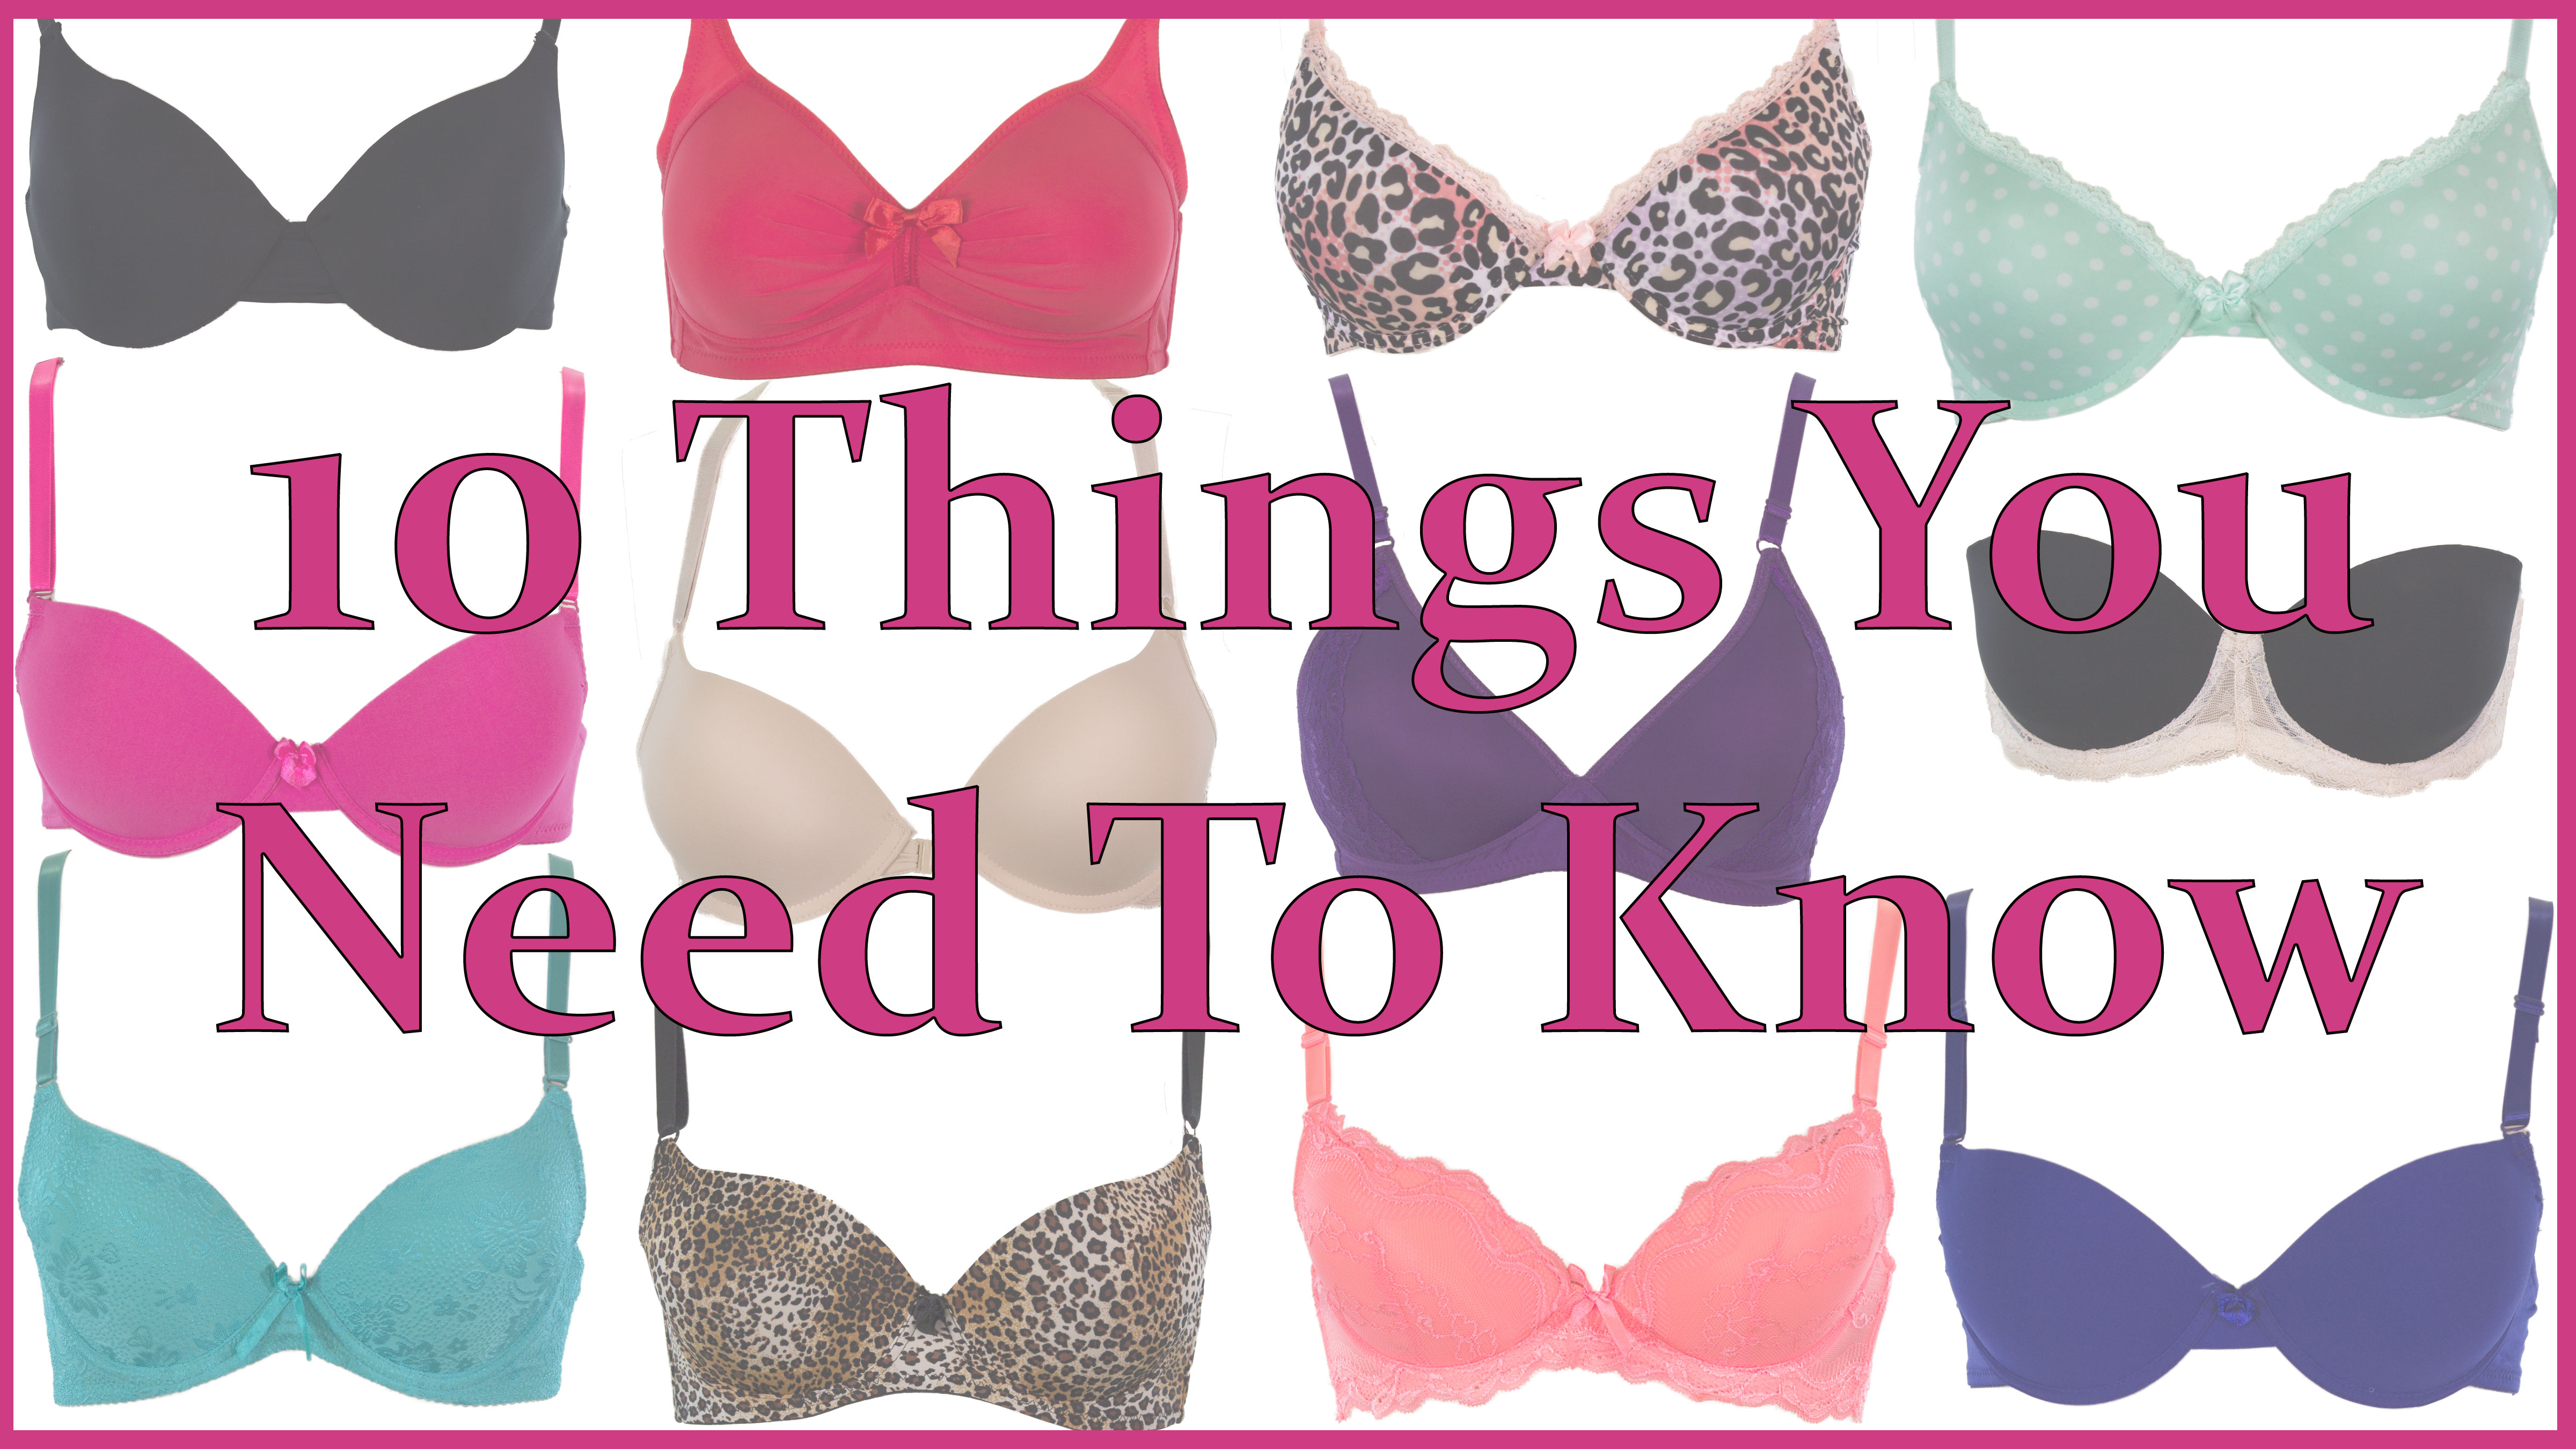 10 Nifty Bra Tricks Every Woman Should Know